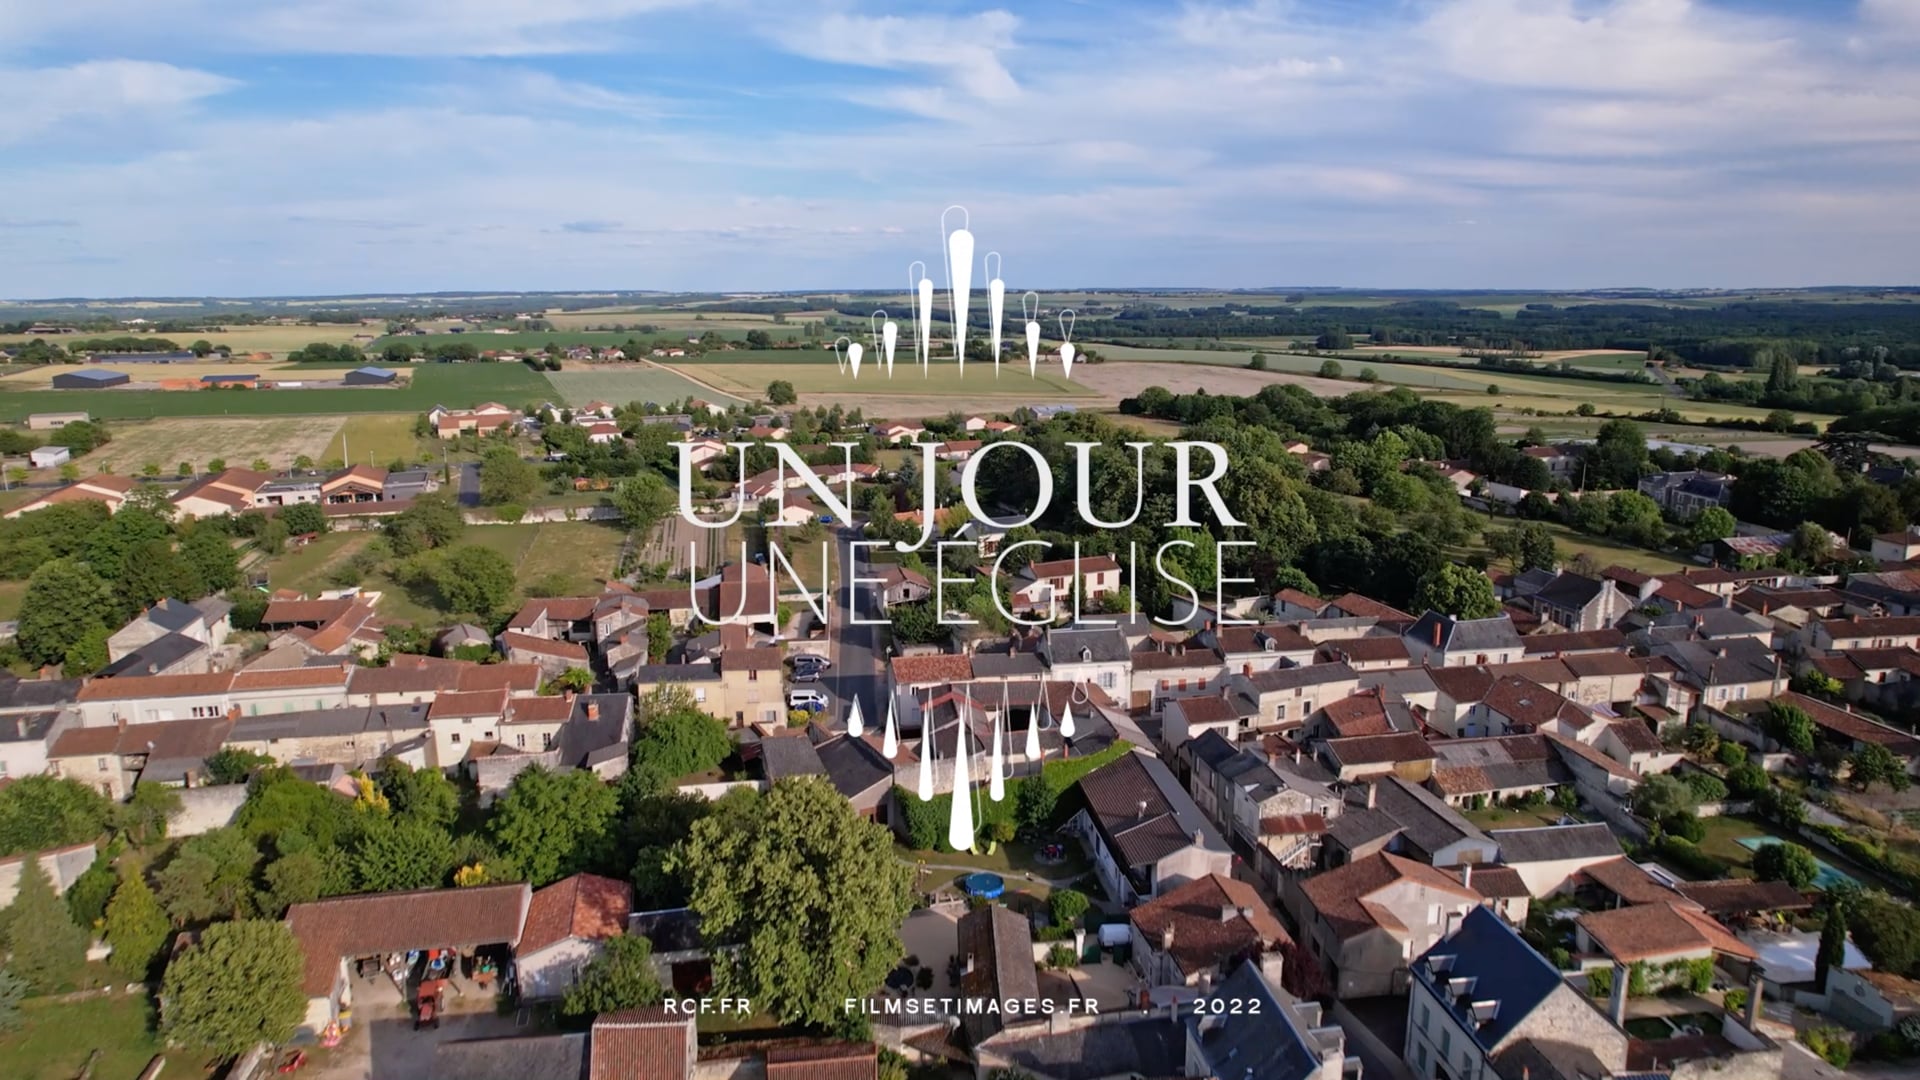 Série documentaire RCF Poitou, "Un jour, une église" Monts-sur-Guenes (S01, ép2)